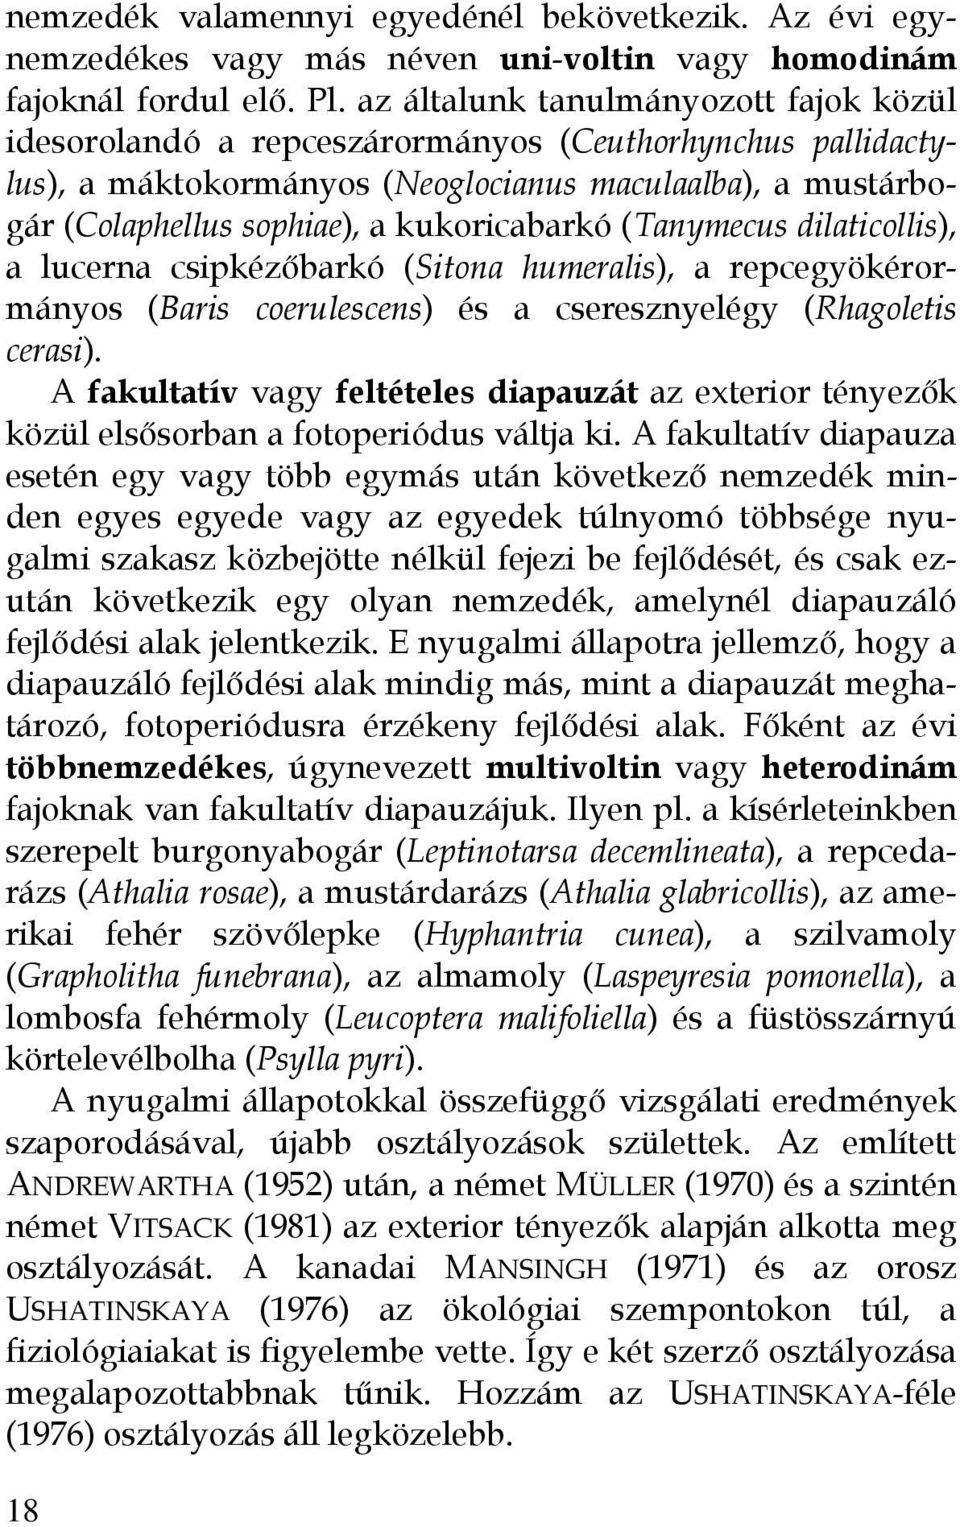 kukoricabarkó (Tanymecus dilaticollis), a lucerna csipkézőbarkó (Sitona humeralis), a repcegyökérormányos (Baris coerulescens) és a cseresznyelégy (Rhagoletis cerasi).